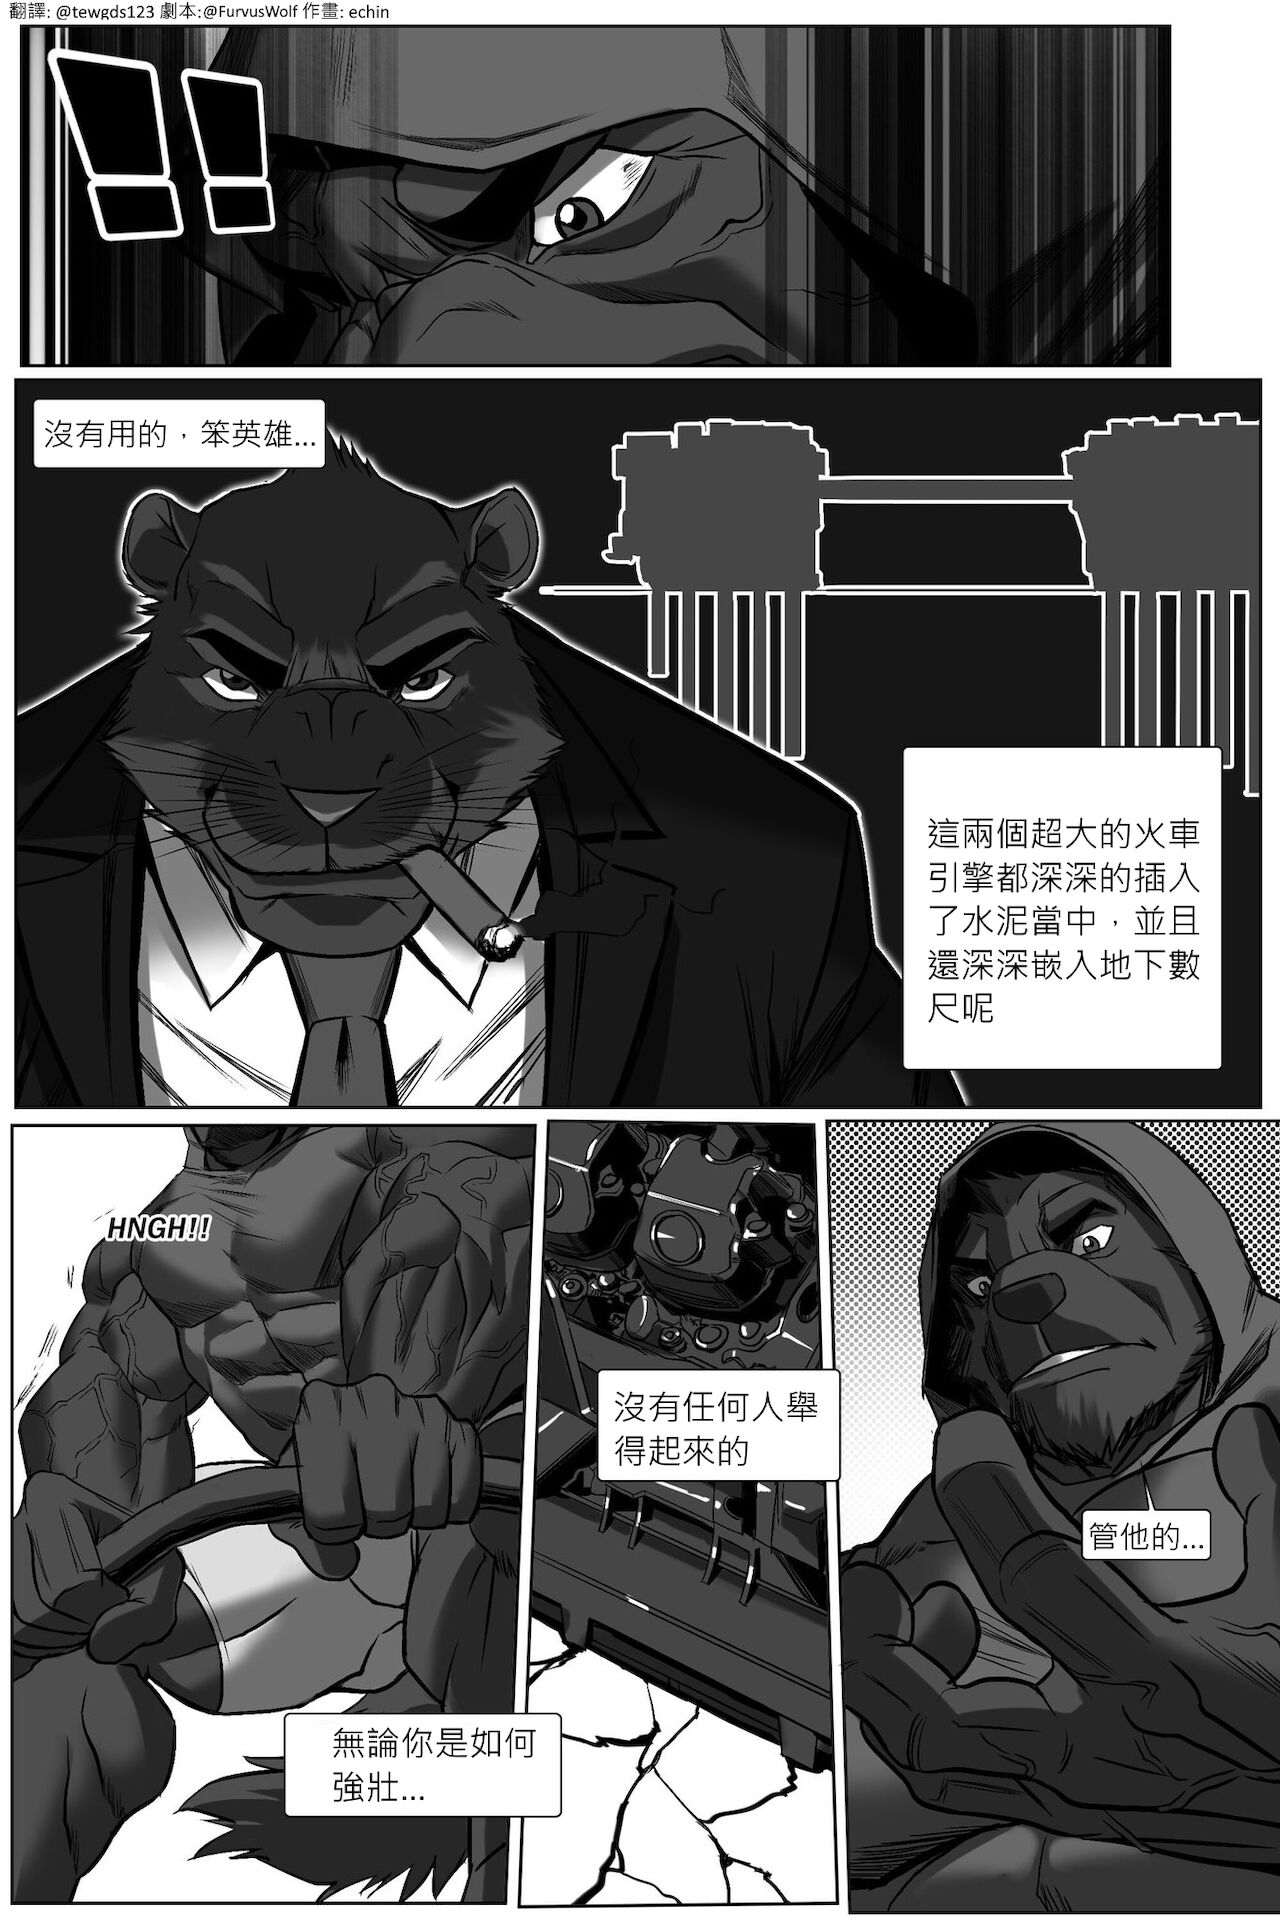 [echin][The Impossible Hulk Wolf][chinese] 